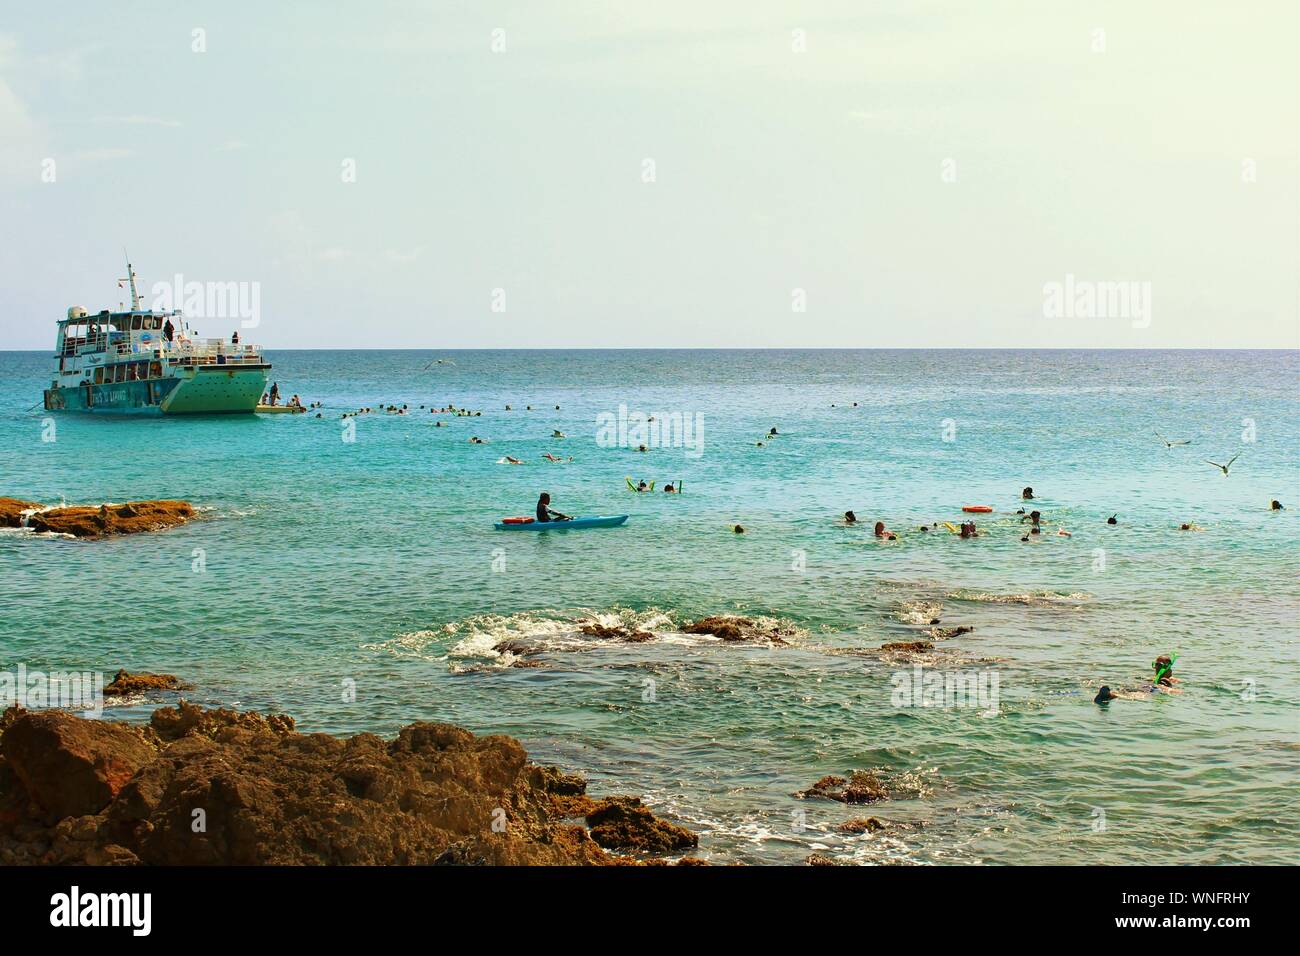 19 agosto 2019: un grande gruppo di turisti e villeggianti snorkeling nel mare intorno al popolare destinazione turistica di Maho Beach, St Maarten. Foto Stock